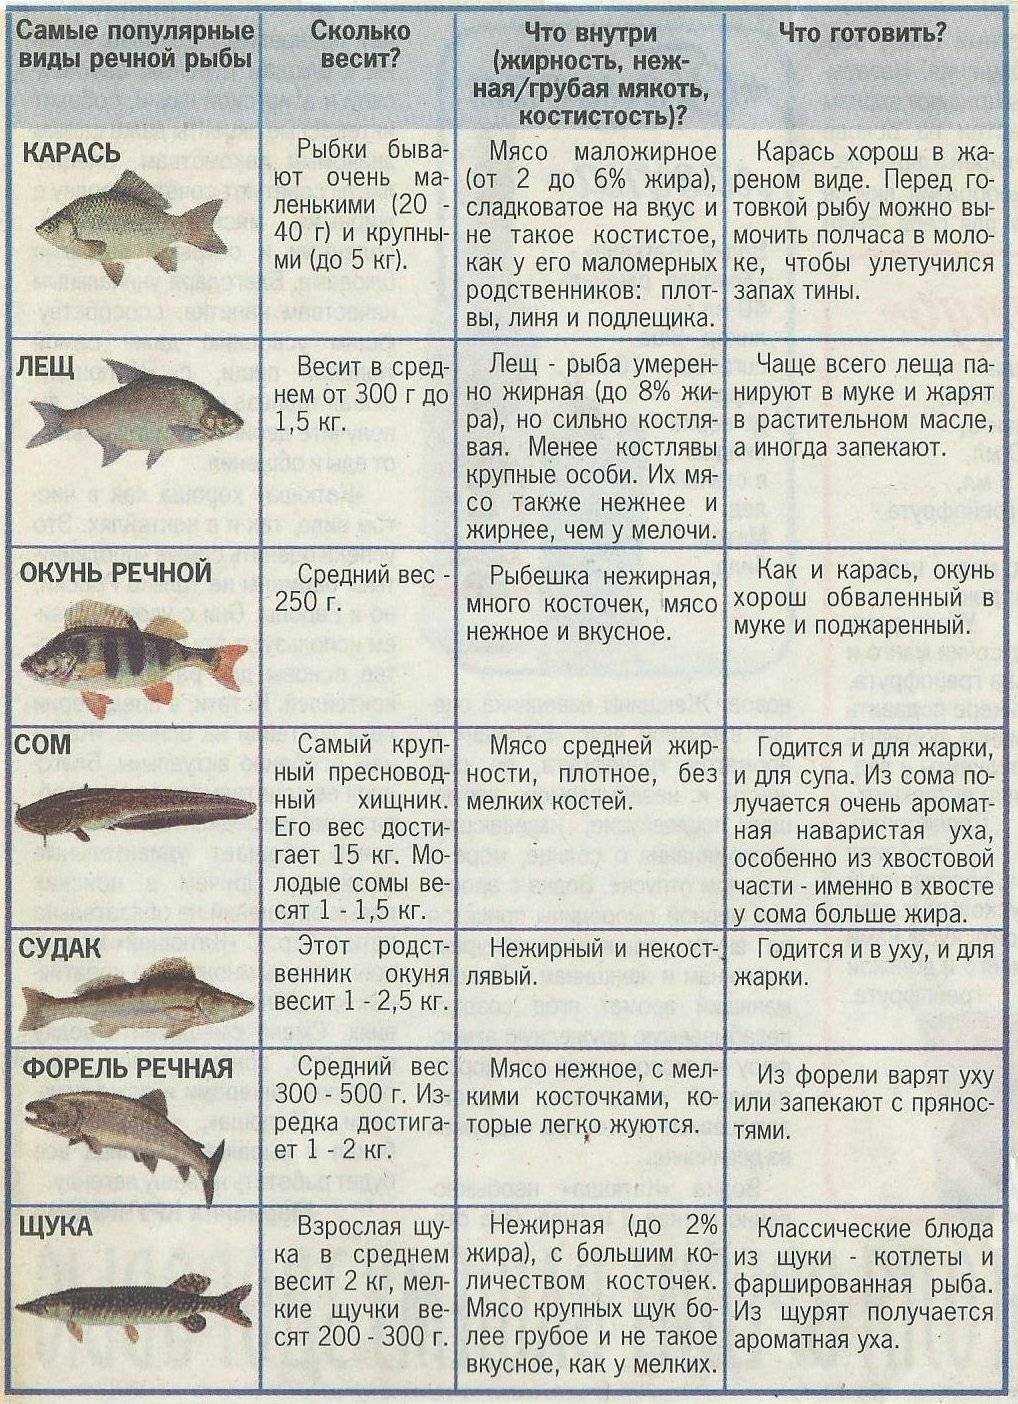 Самая полезная рыба: речная или морская. существует ли рыба, польза которой максимальна, или вся рыба одинаково полезна?